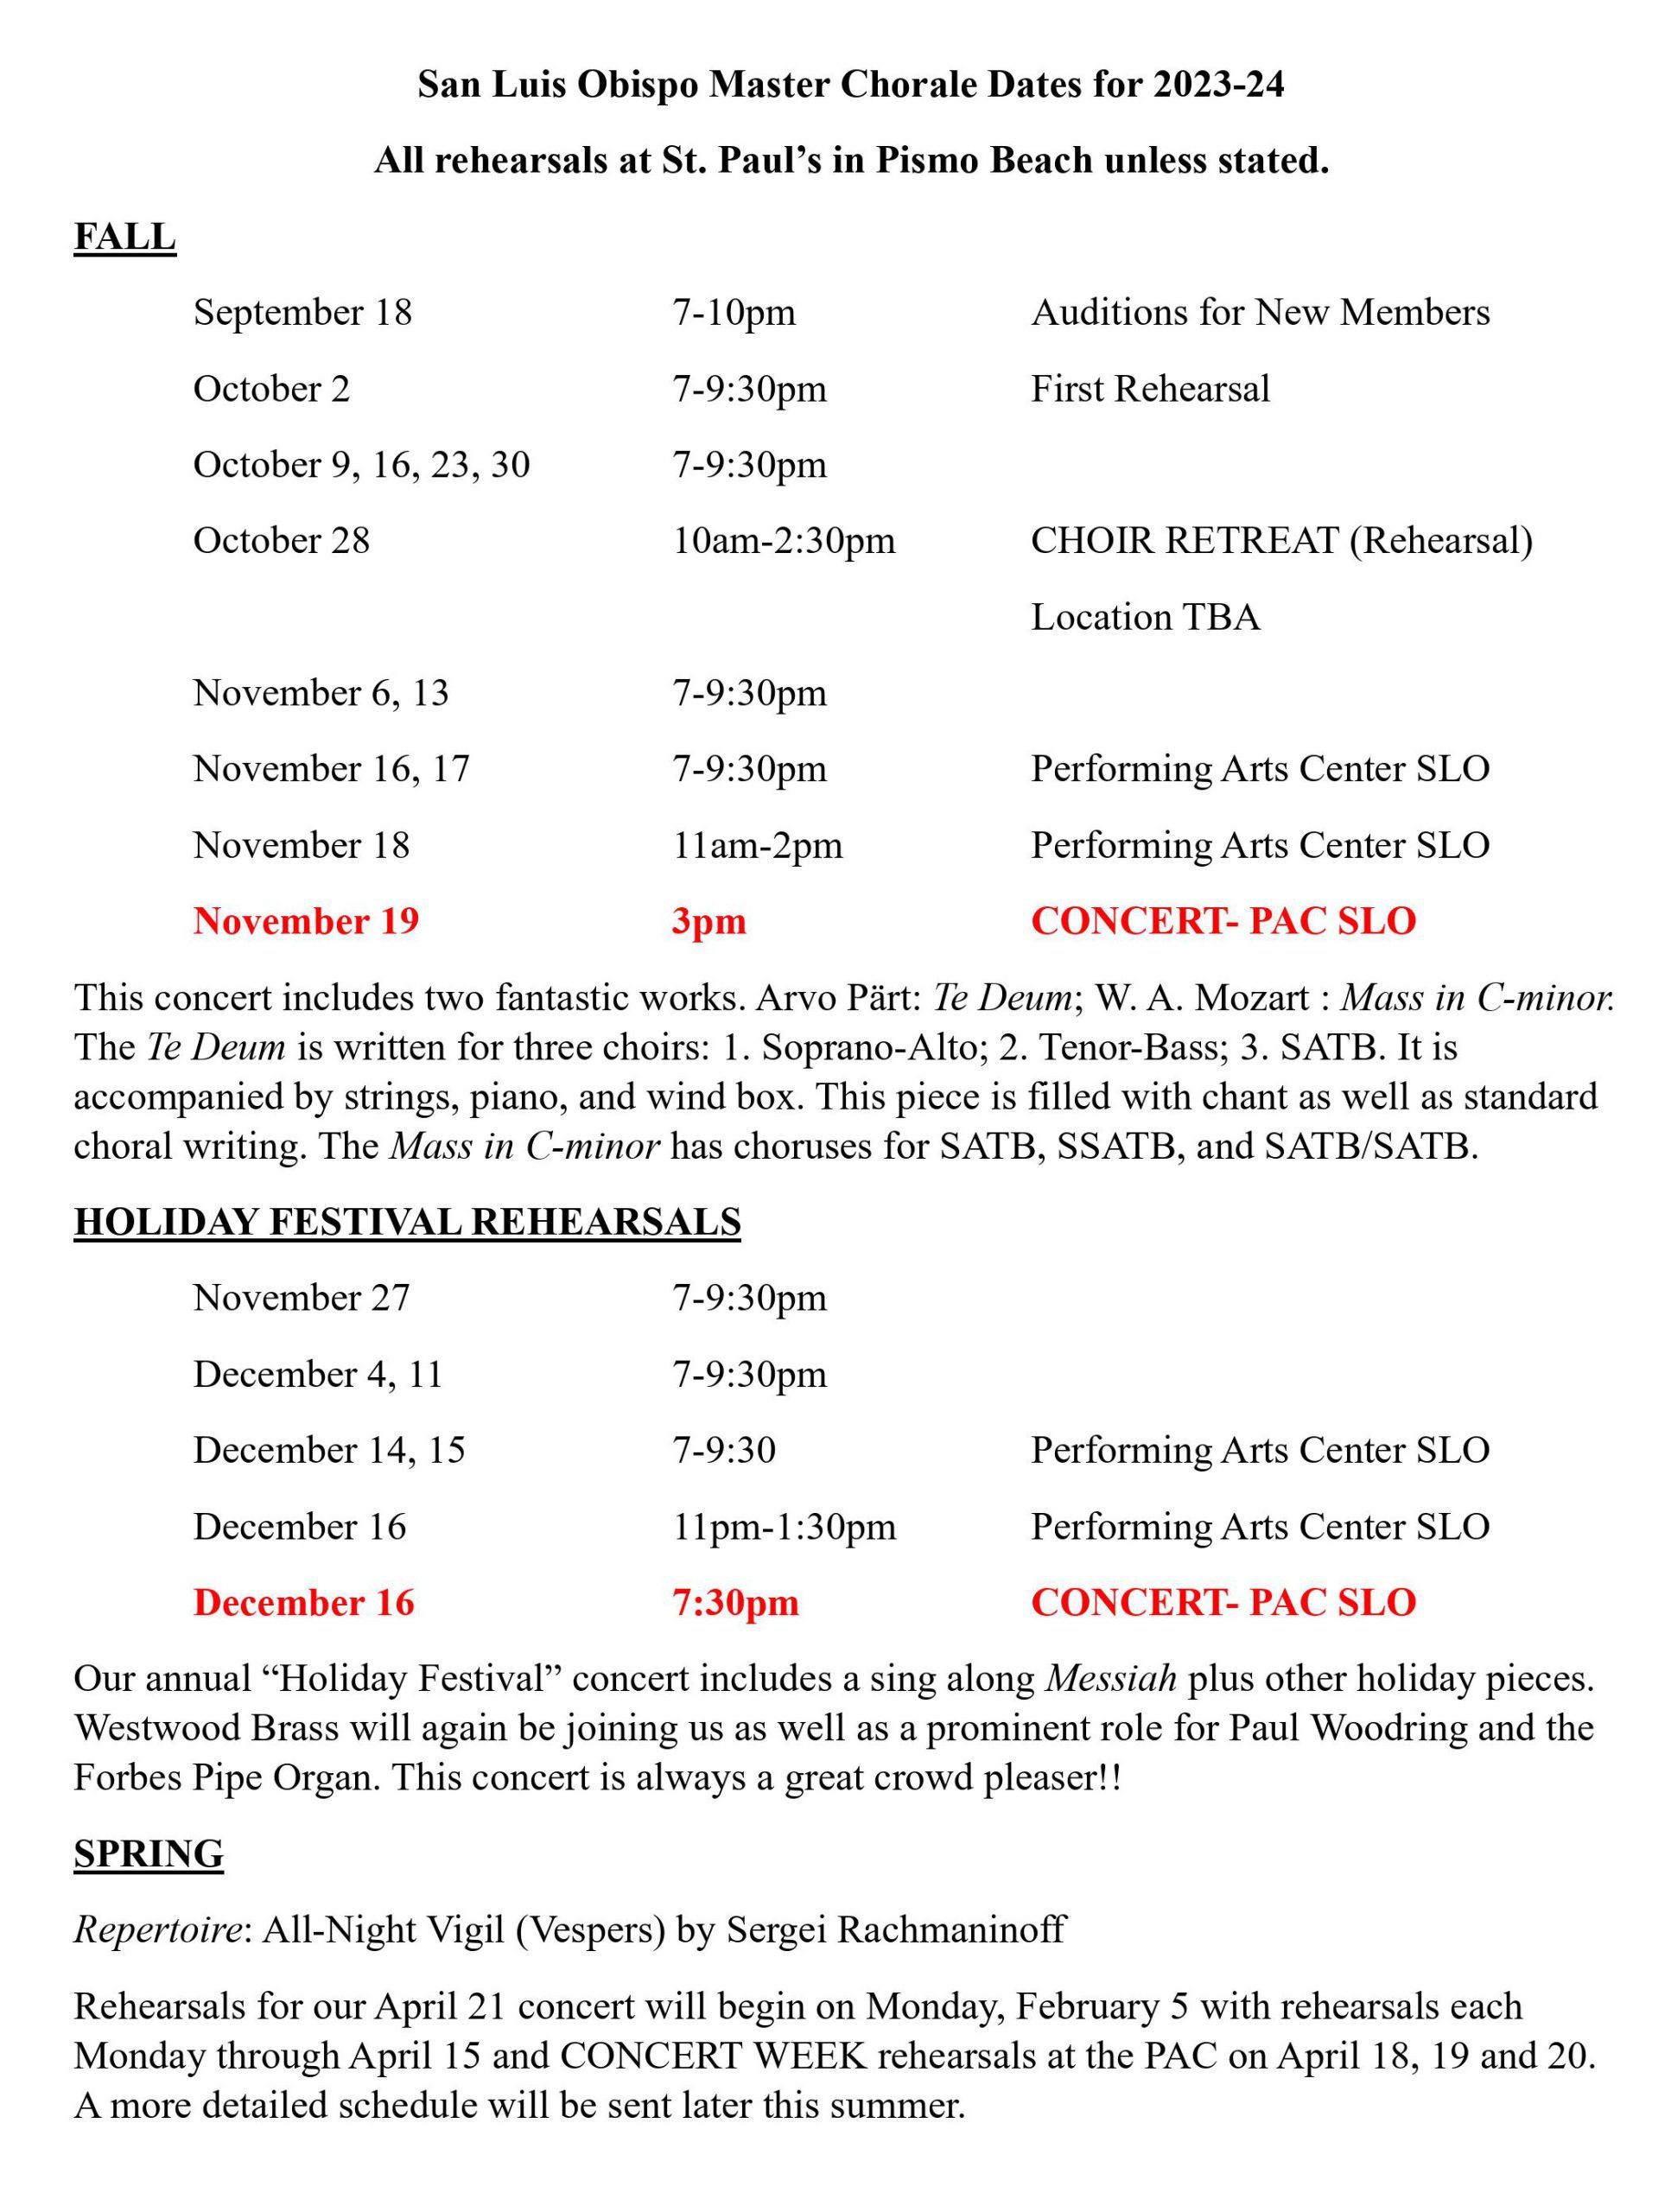 San Luis Obispo Master Chorale's 2023 - 2024 schedule